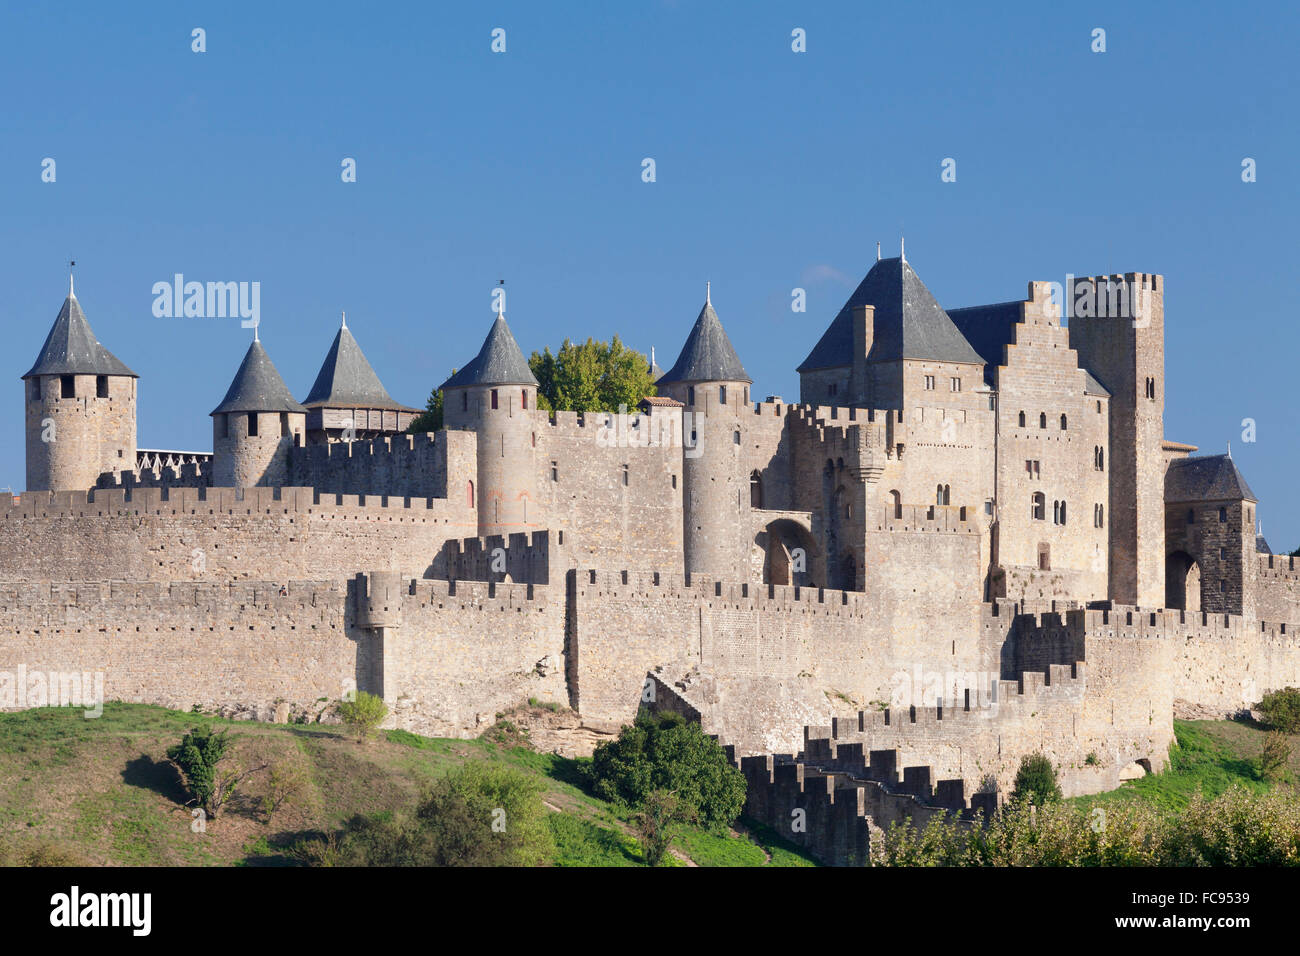 La cite, fortezza medioevale città, Carcassonne, Sito Patrimonio Mondiale dell'UNESCO, Languedoc-Roussillon, Francia, Europa Foto Stock